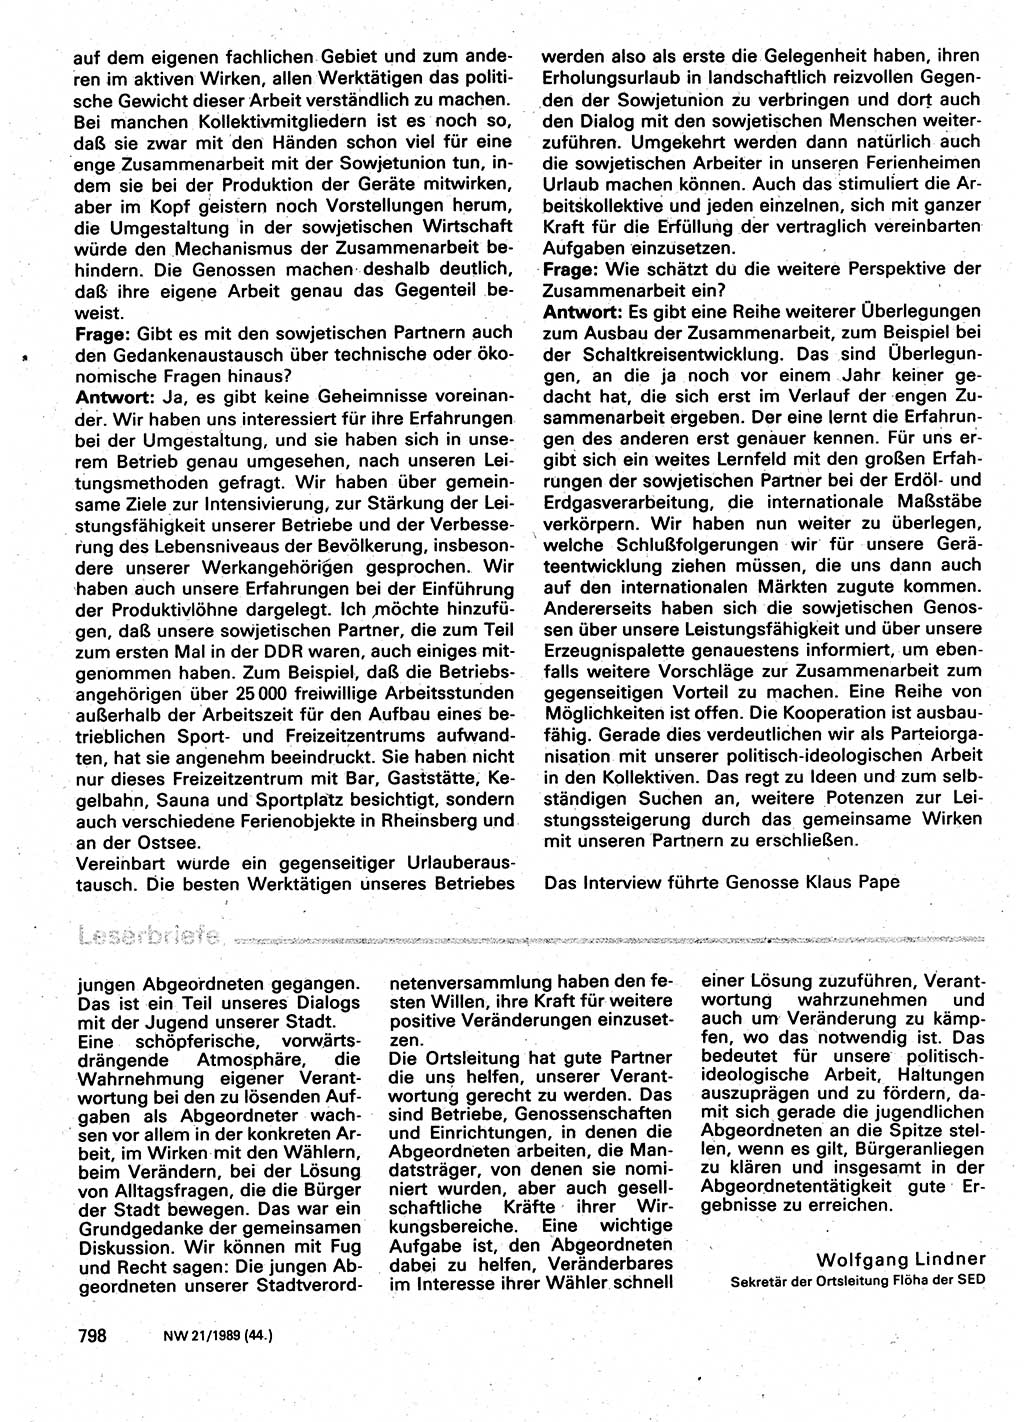 Neuer Weg (NW), Organ des Zentralkomitees (ZK) der SED (Sozialistische Einheitspartei Deutschlands) für Fragen des Parteilebens, 44. Jahrgang [Deutsche Demokratische Republik (DDR)] 1989, Seite 798 (NW ZK SED DDR 1989, S. 798)